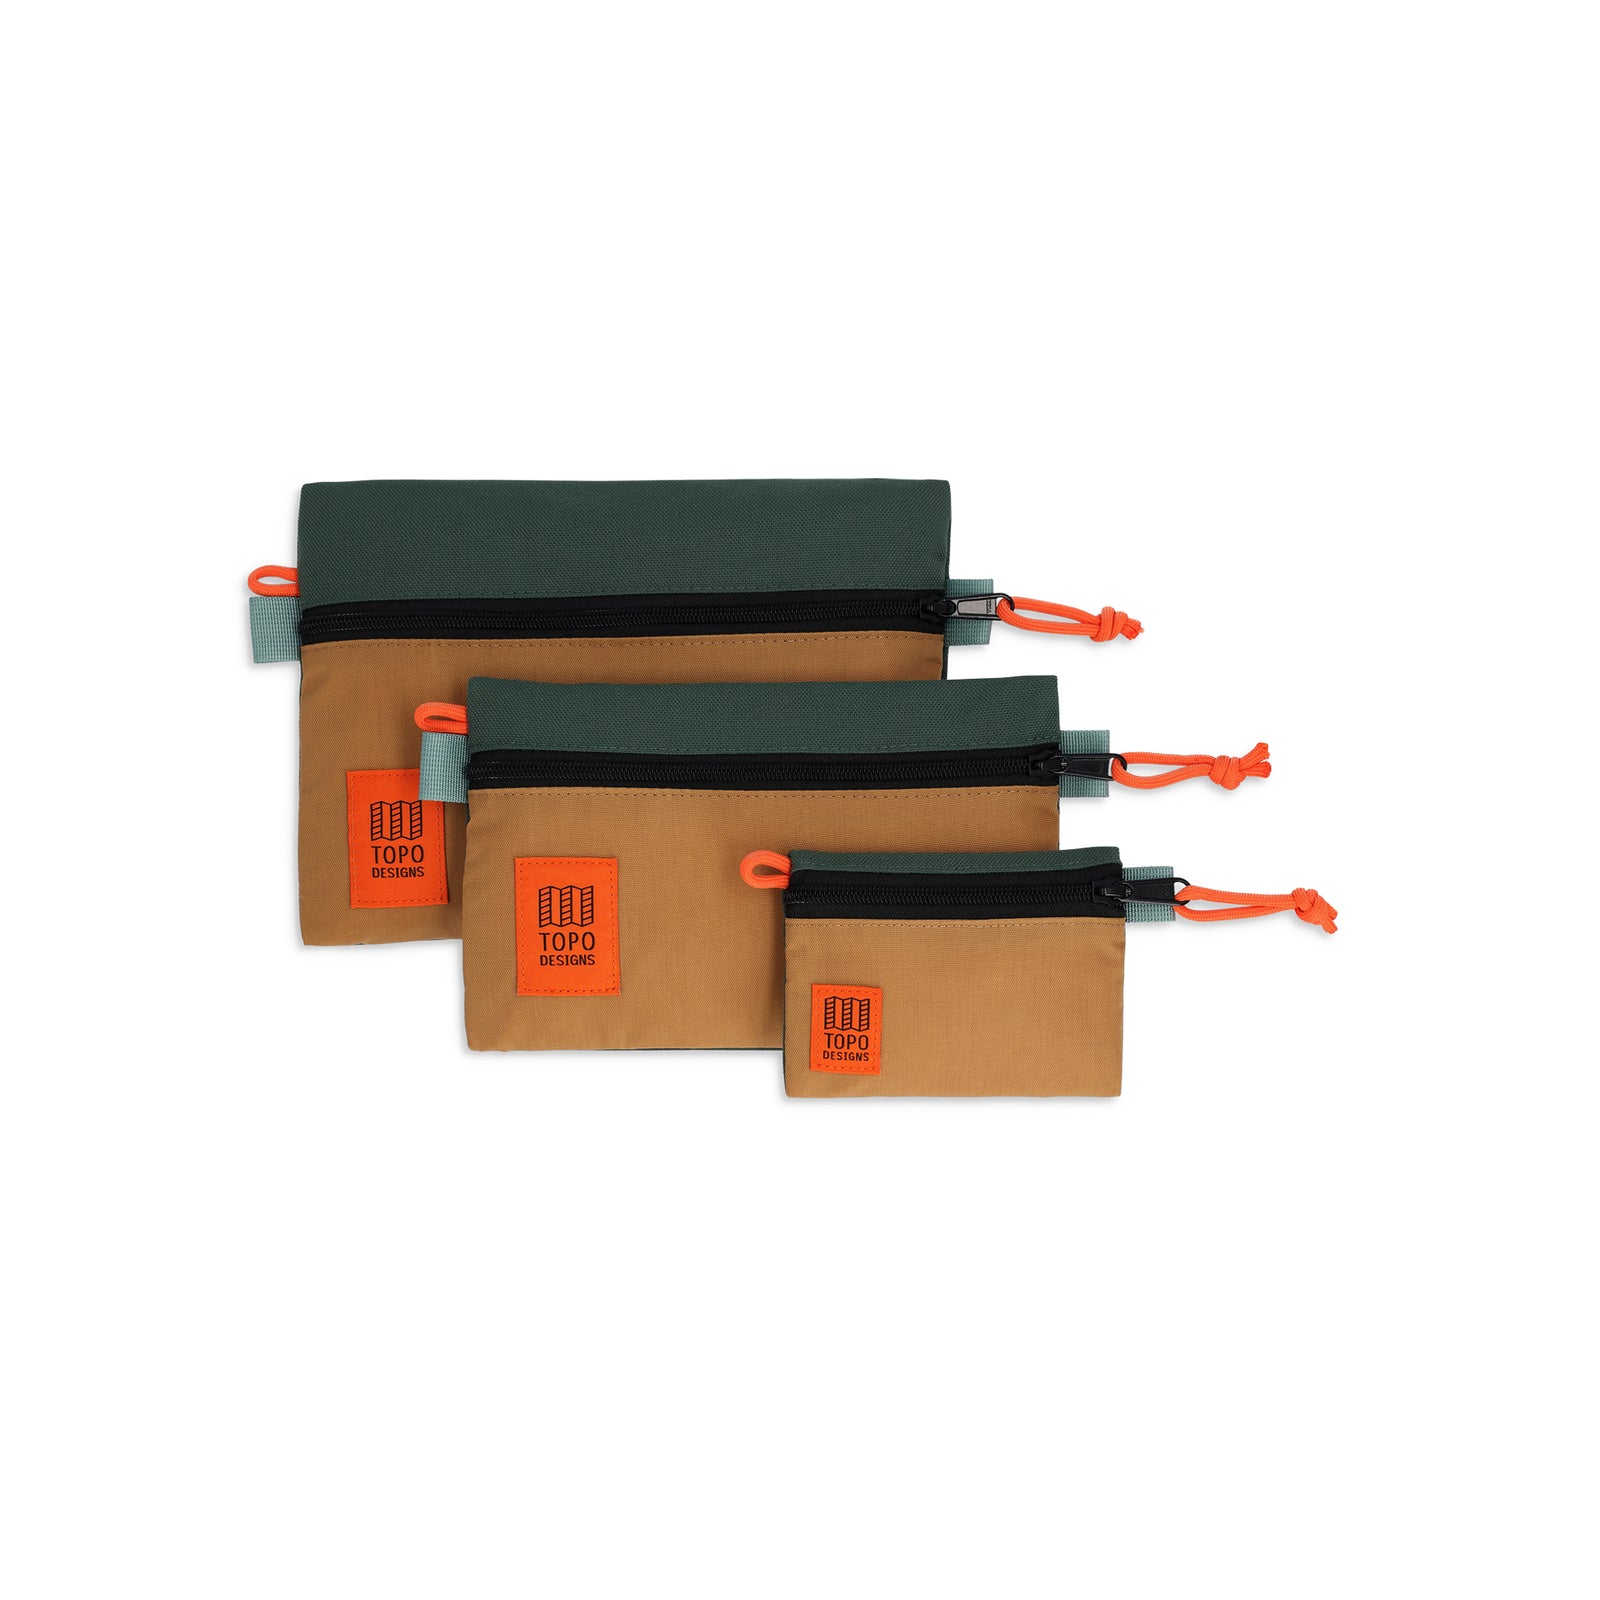 Topo Designs Accessory Bag "small", "micro", "medium" in "Khaki / Forest"